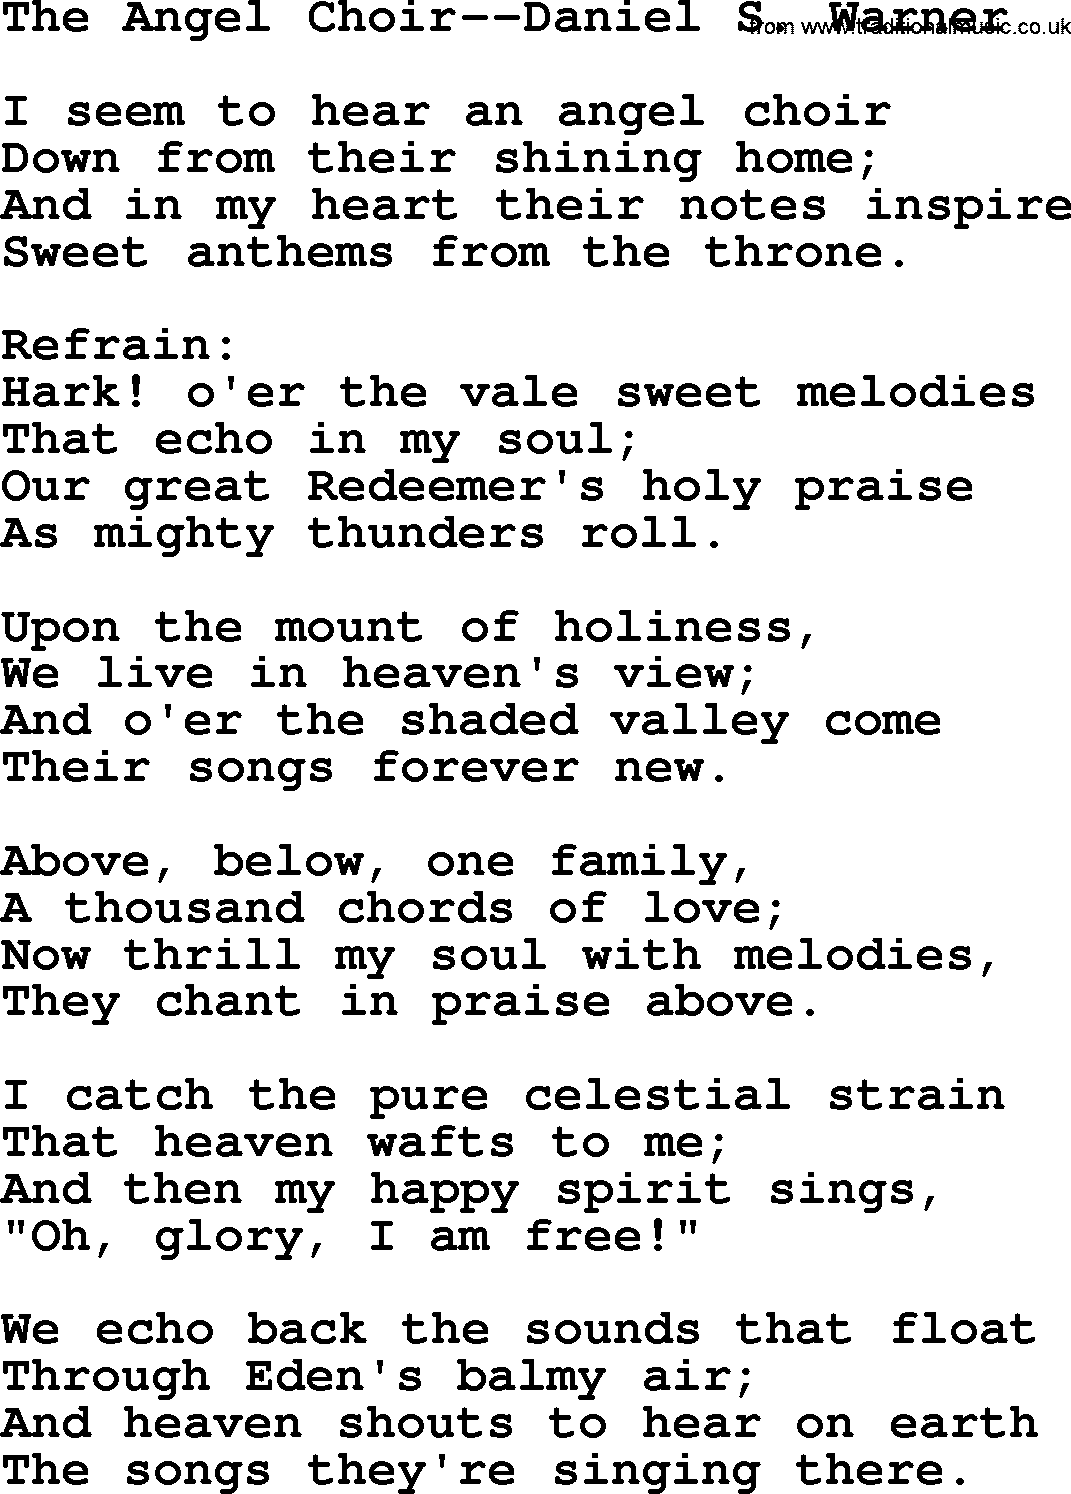 Hymns about Angels, Hymn: The Angel Choir--daniel S. Warner.txt lyrics with PDF